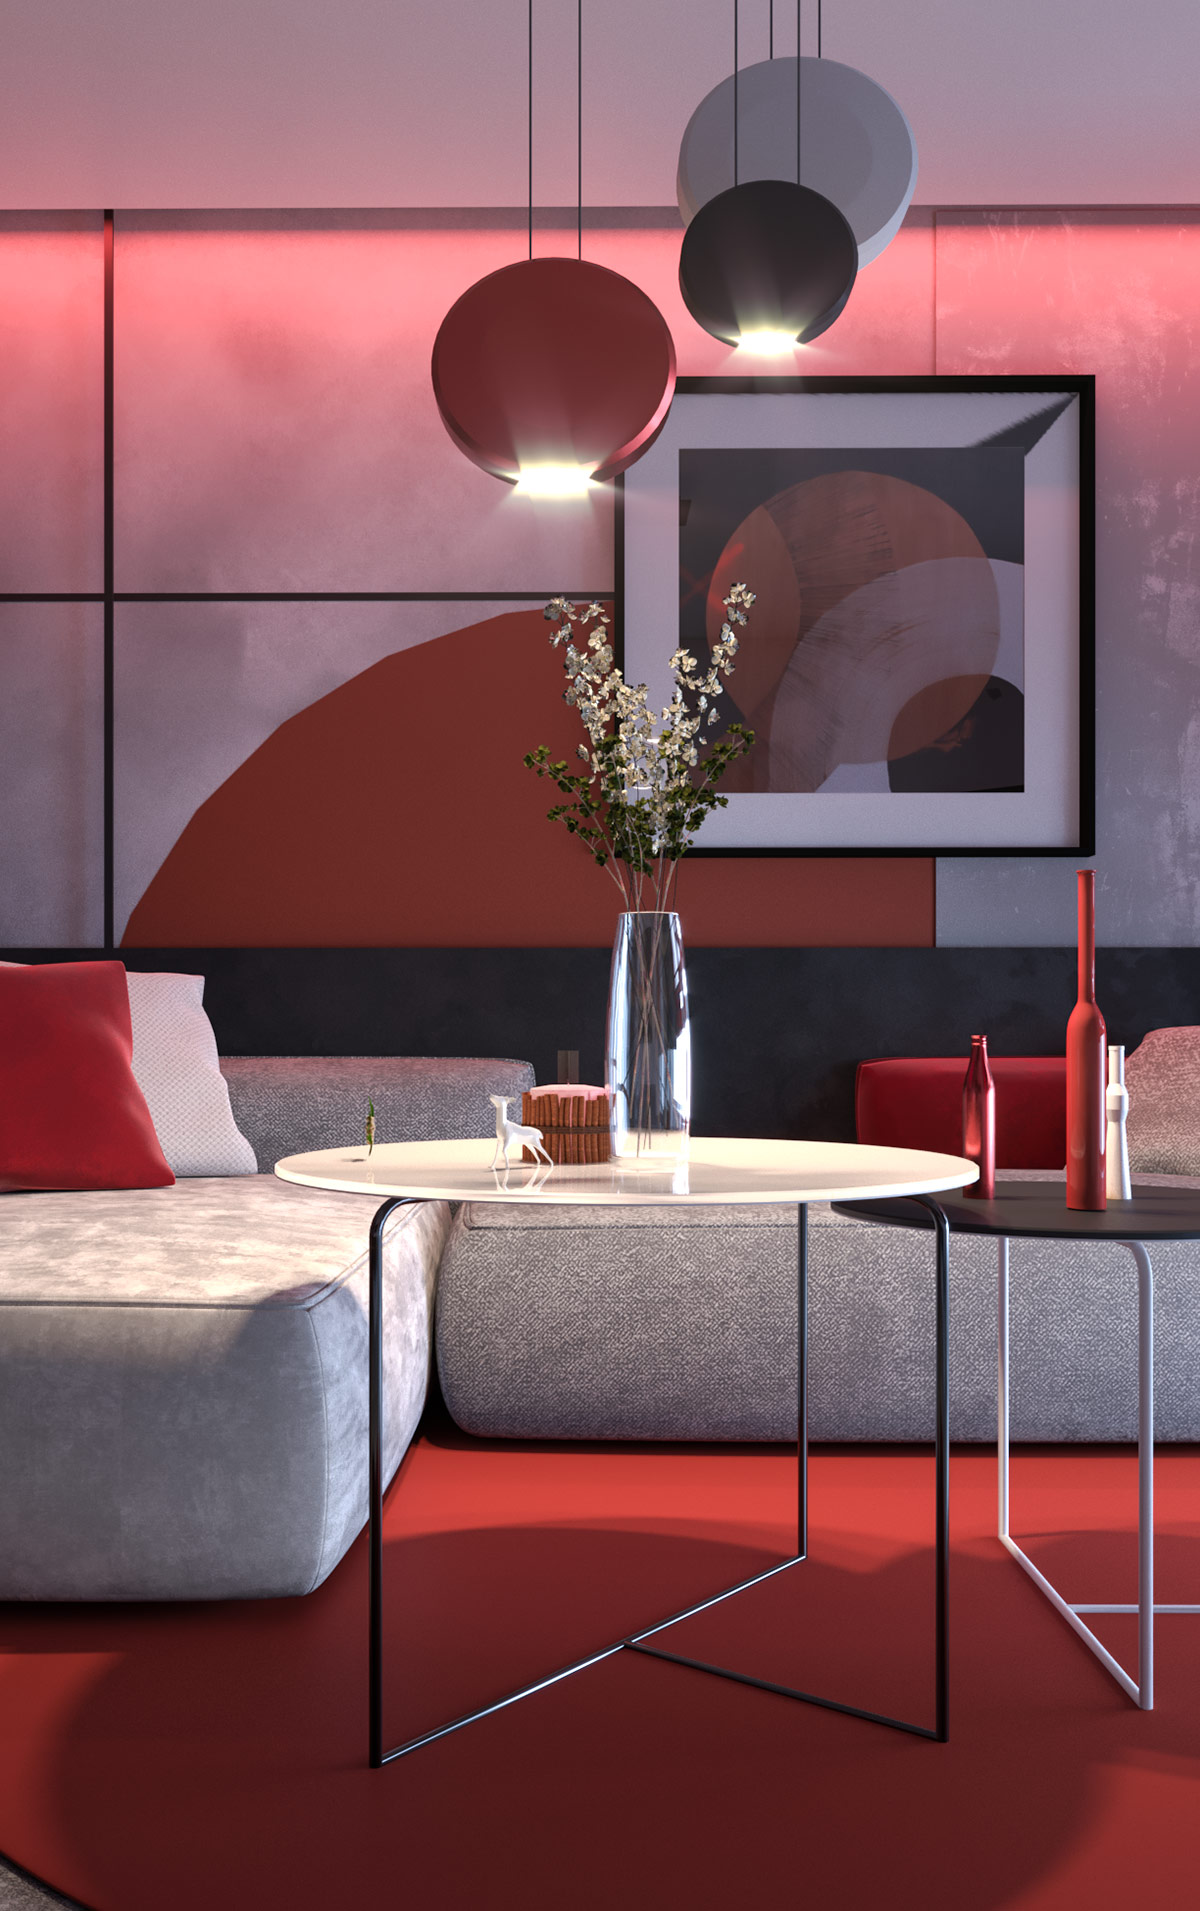 Căn hộ hiện đại với nội thất đỏ xám phong cách Nhật Bản